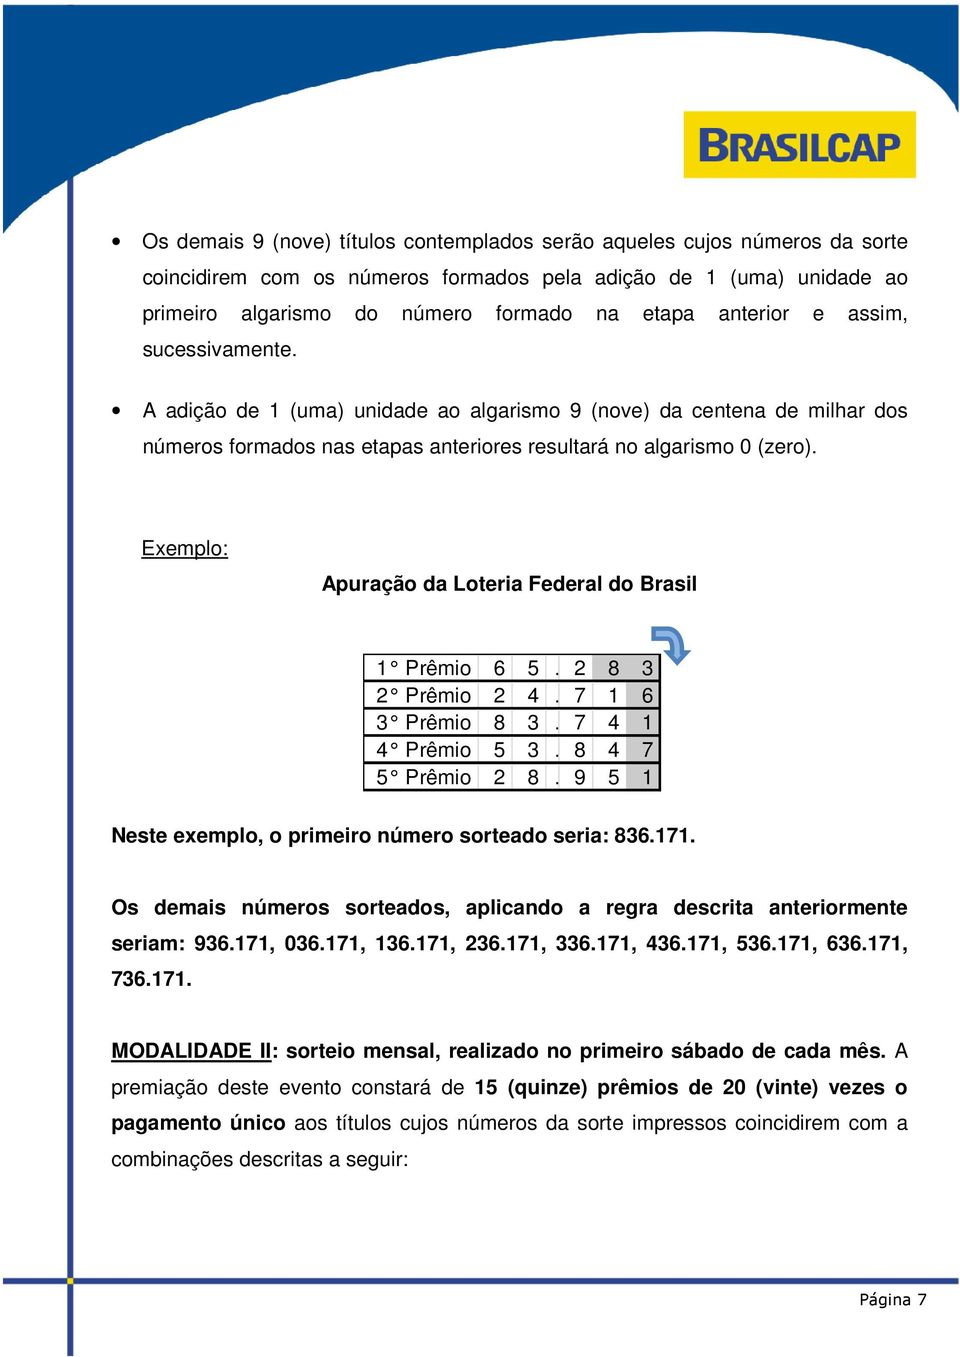 Exemplo: Apuração da Loteria Federal do Brasil 1 Prêmio 6 5. 2 8 3 2 Prêmio 2 4. 7 1 6 3 Prêmio 8 3. 7 4 1 4 Prêmio 5 3. 8 4 7 5 Prêmio 2 8. 9 5 1 Neste exemplo, o primeiro número sorteado seria: 836.